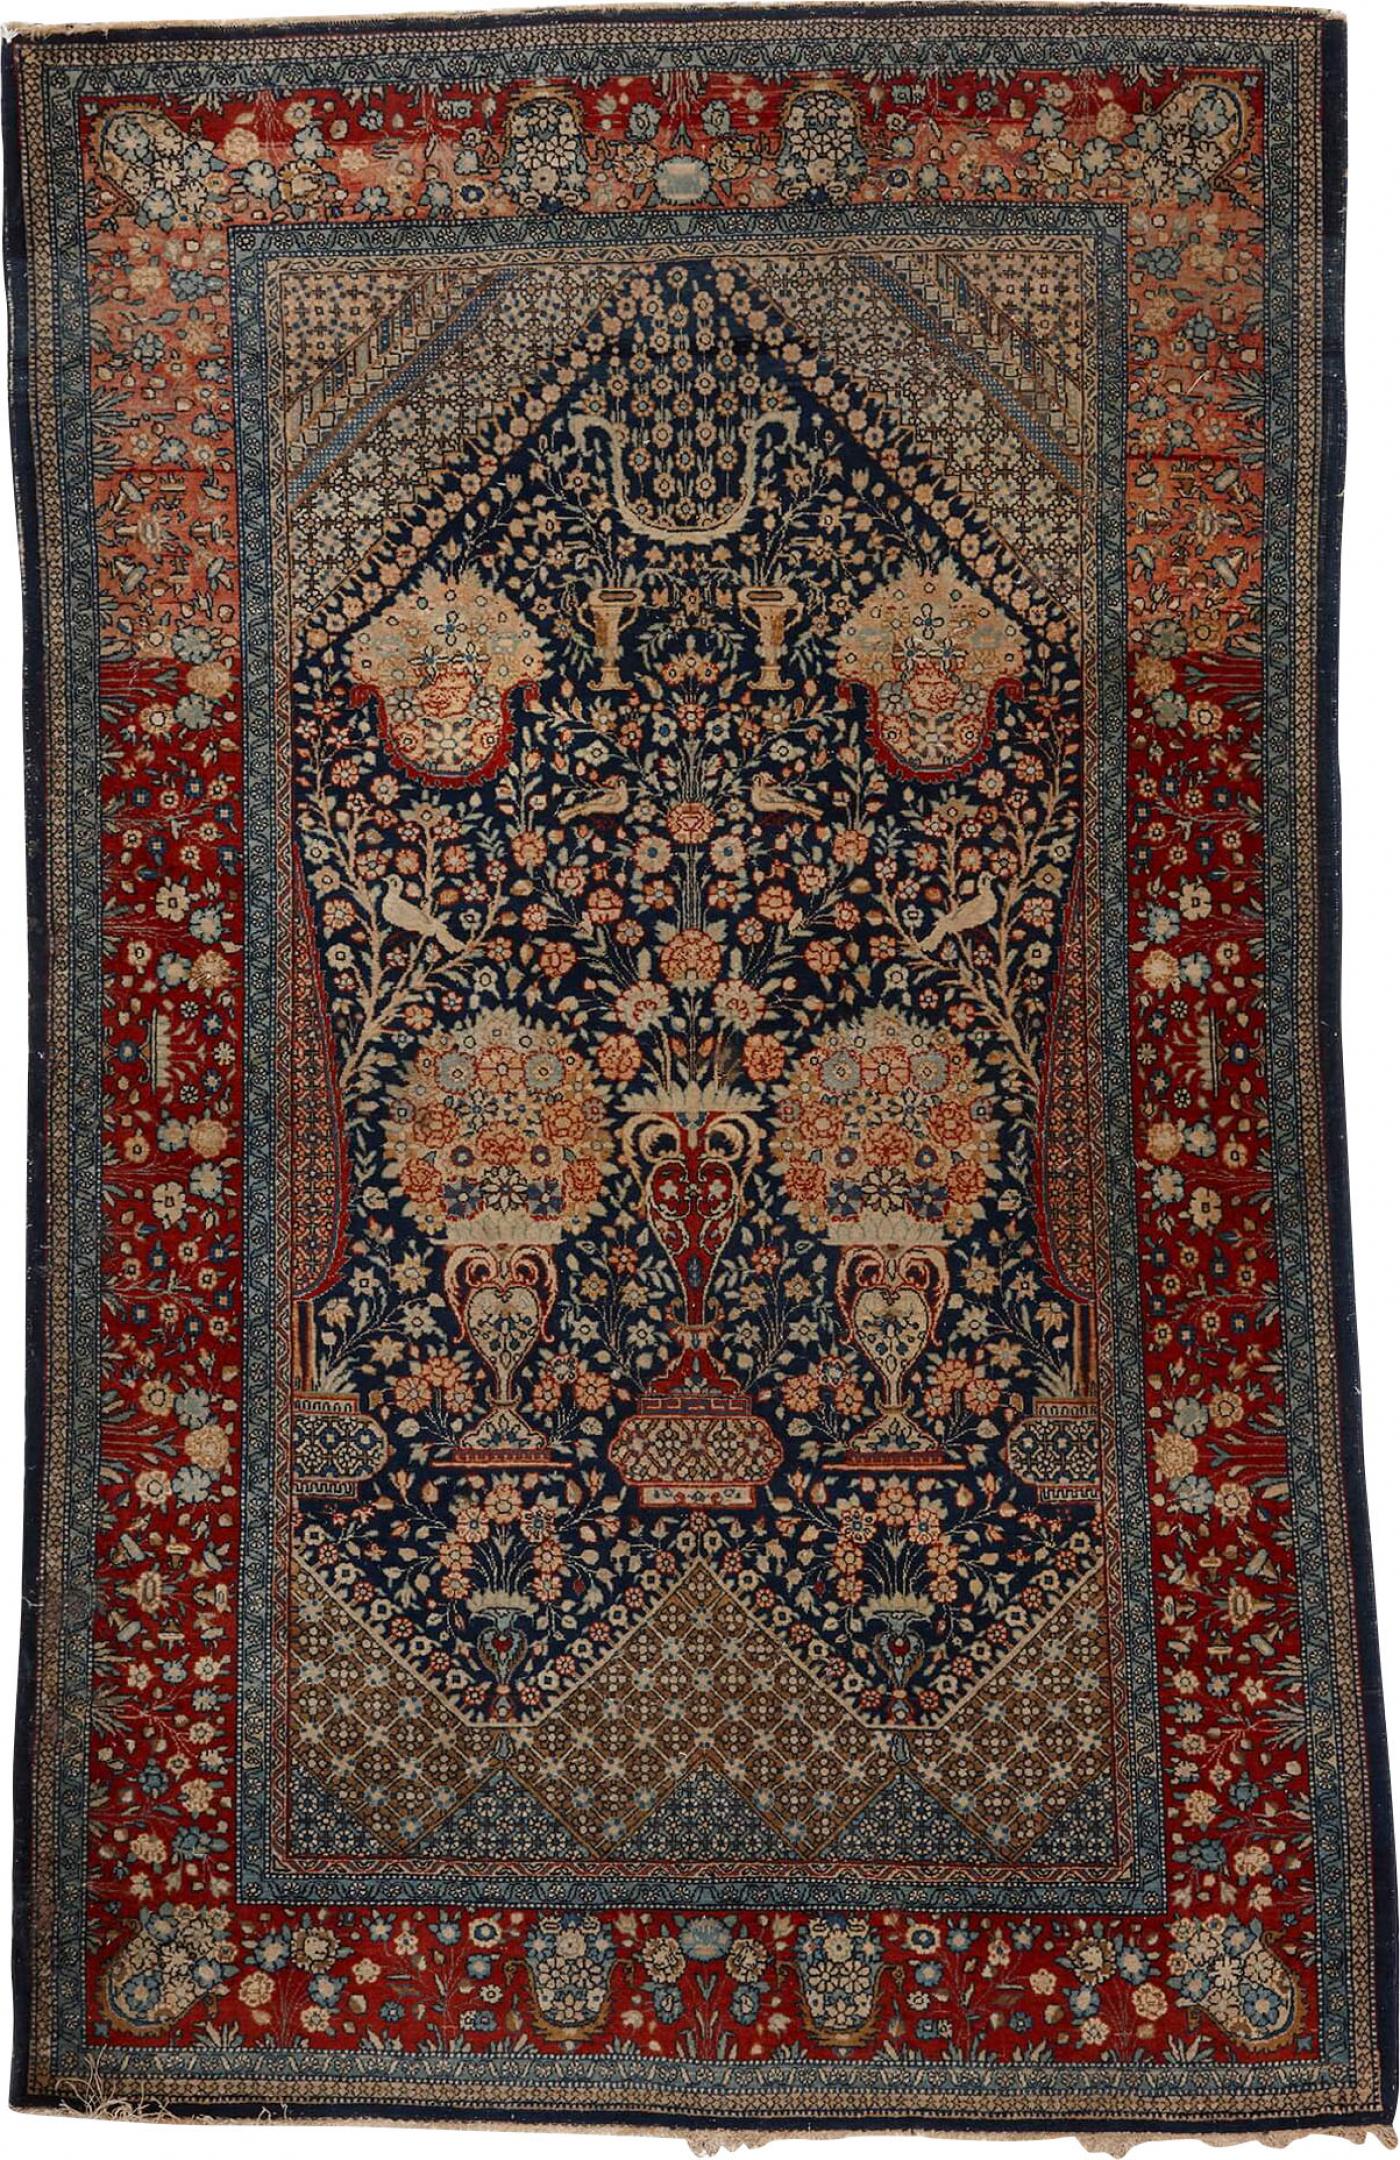 公式販売中 oldmountain PERSIAN DESIGNED CARPET wool | luascans.com